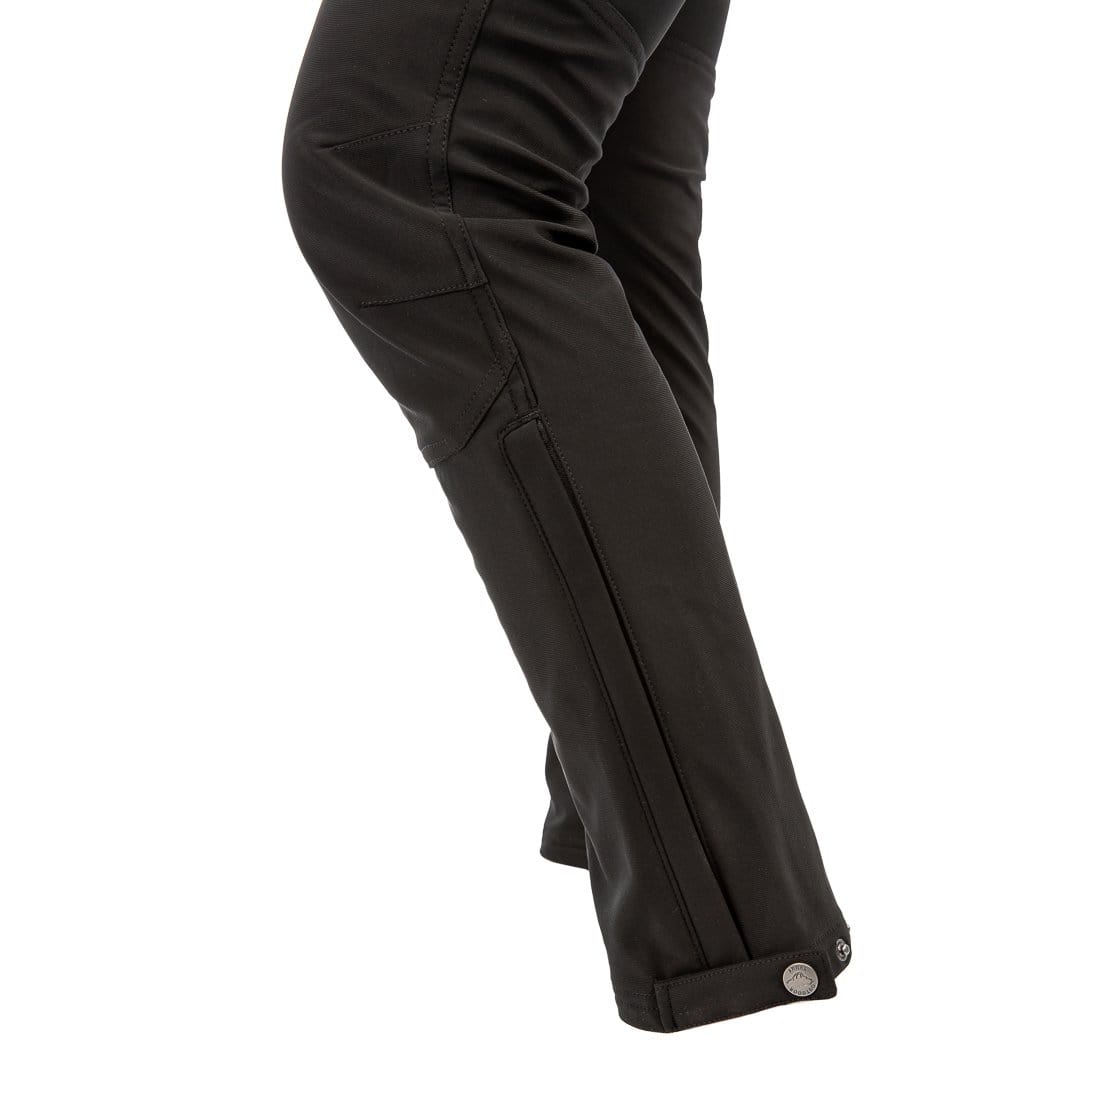 Best Outdoor Insulated Waterproof-Windproof Pants for Women